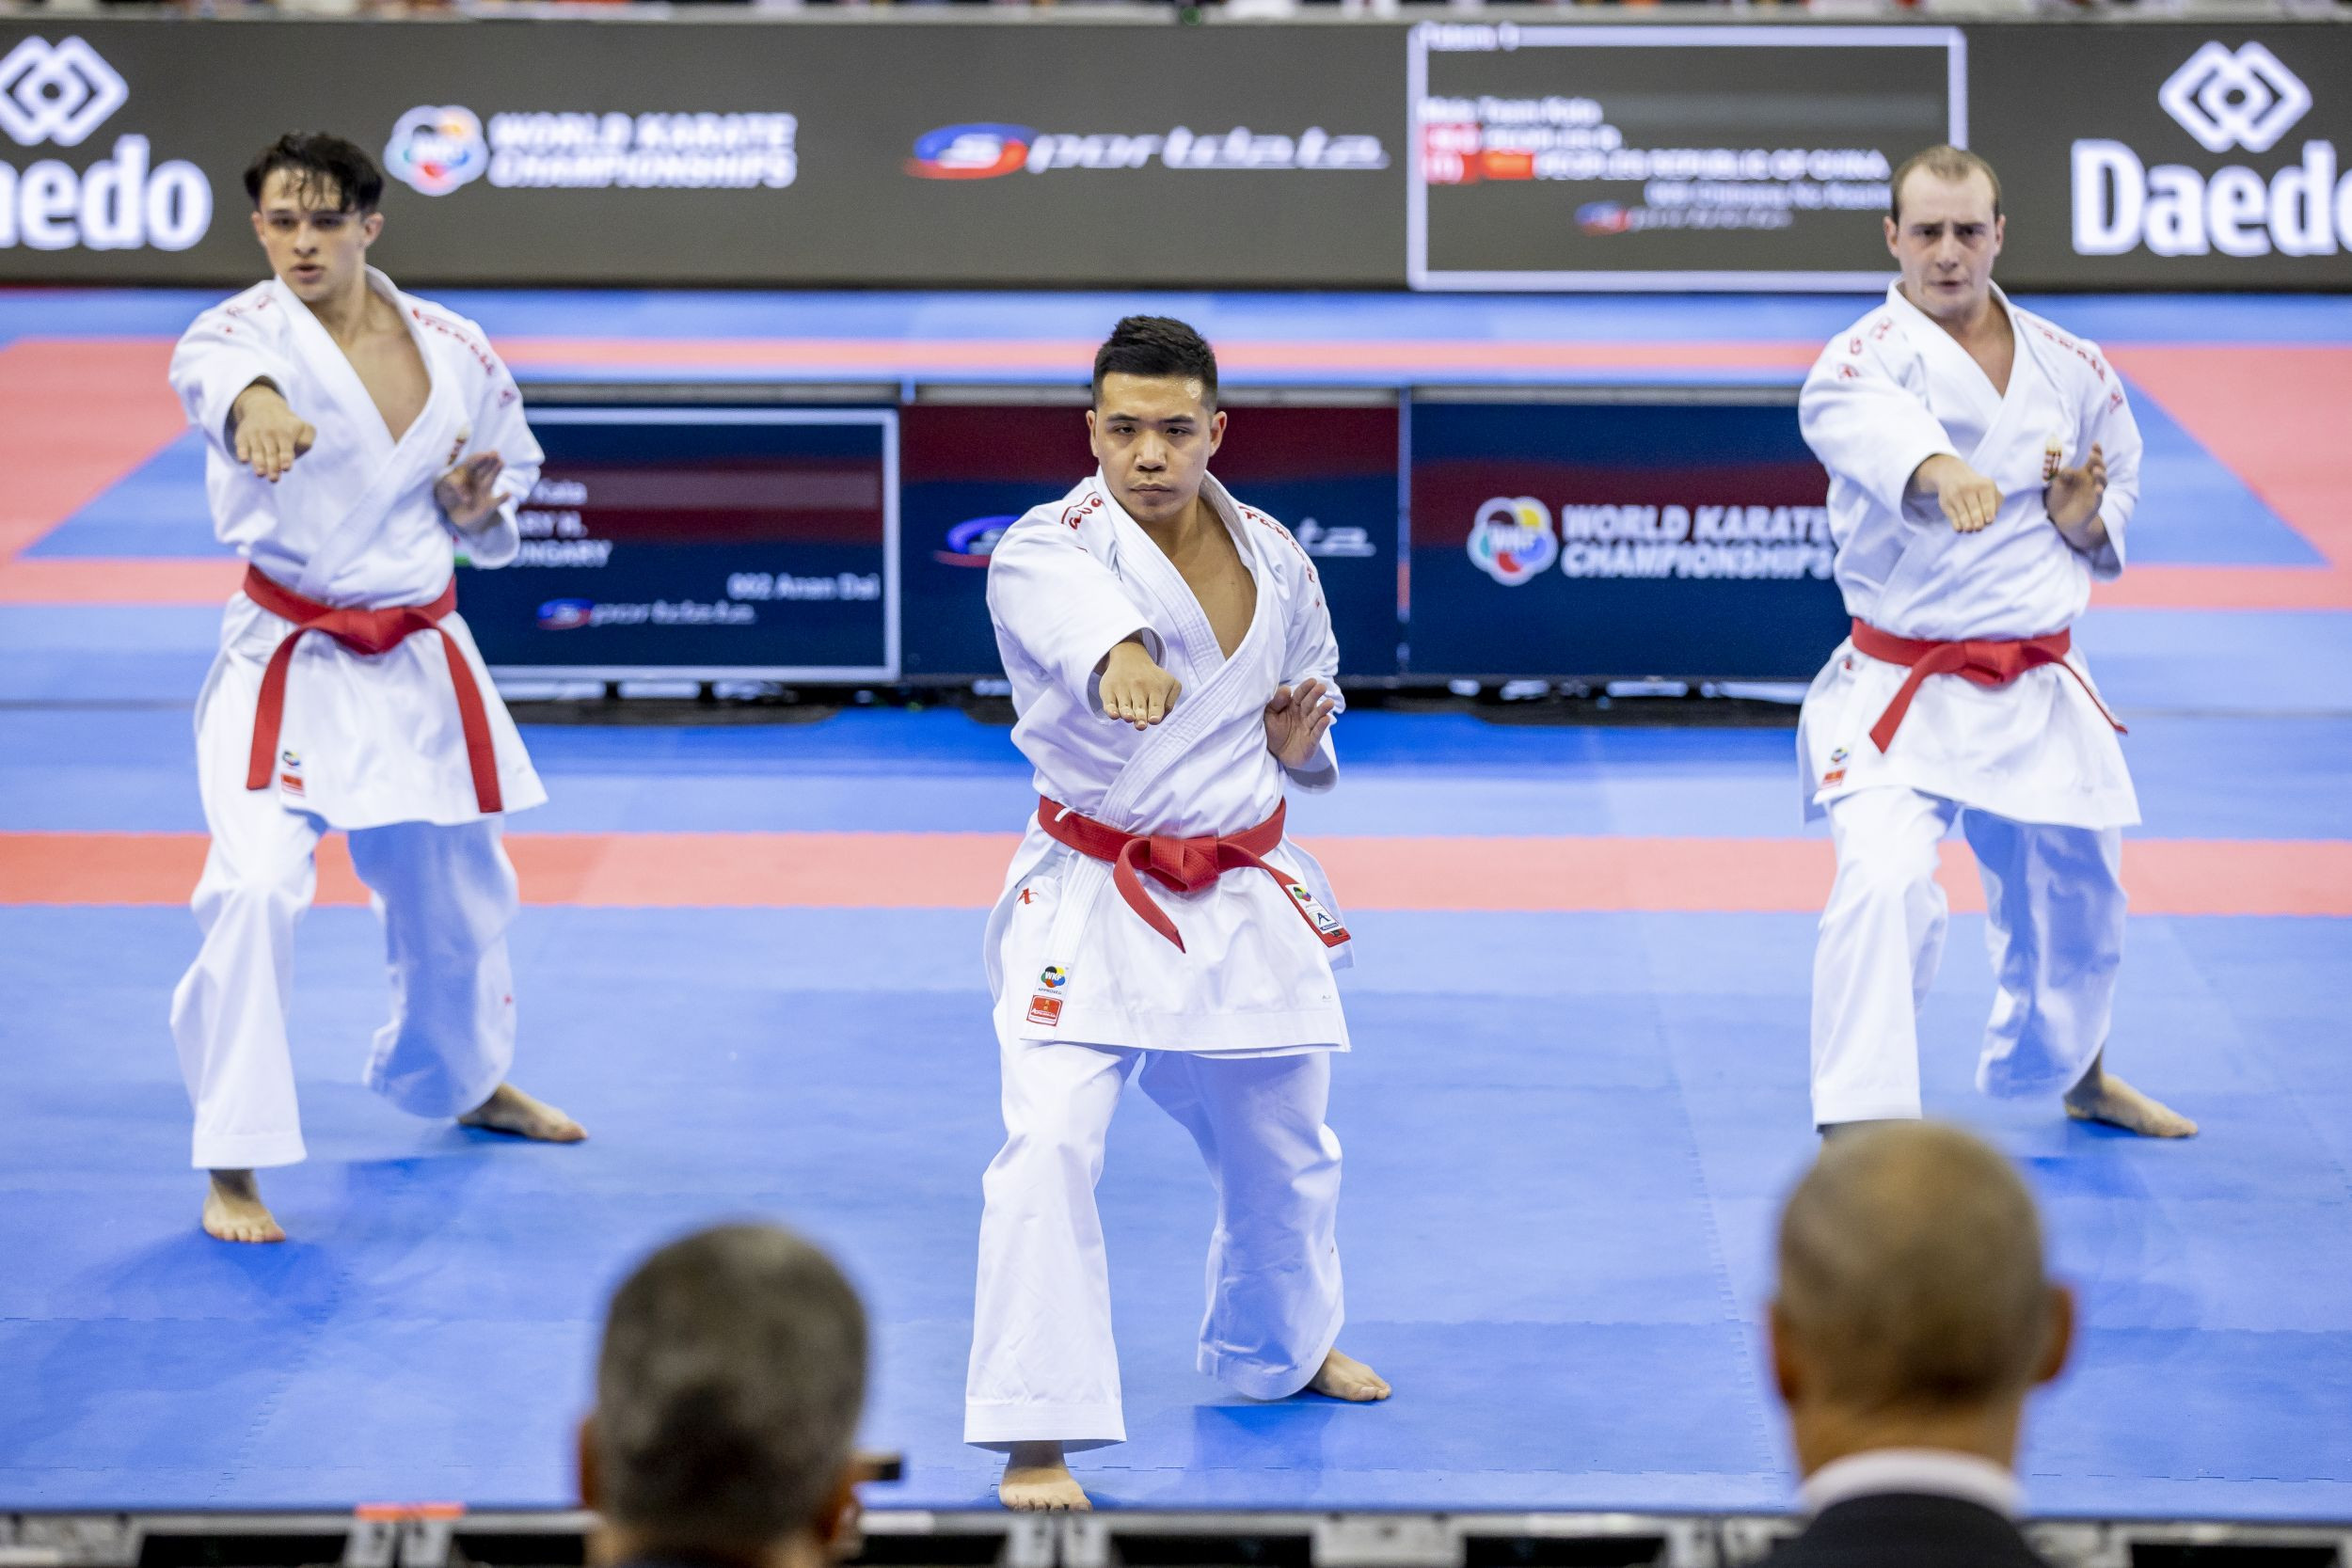 Továbbjutott küzdelemben a magyar férfi csapat a budapesti karate vb-n